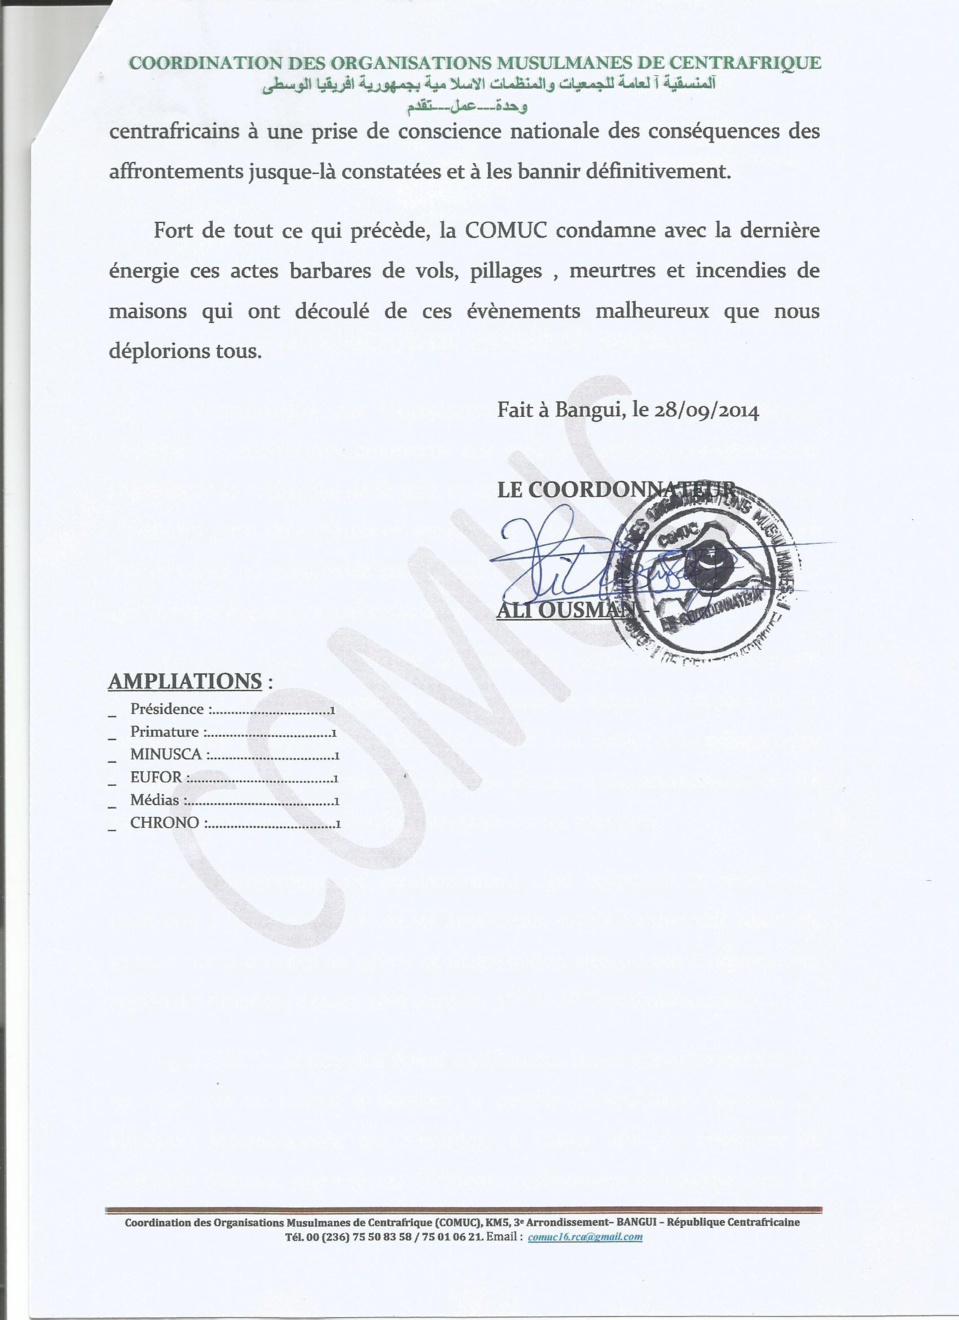 RCA : Condamnations des incidents du samedi 27 au dimanche 28 septembre survenus au KM5 de Bangui